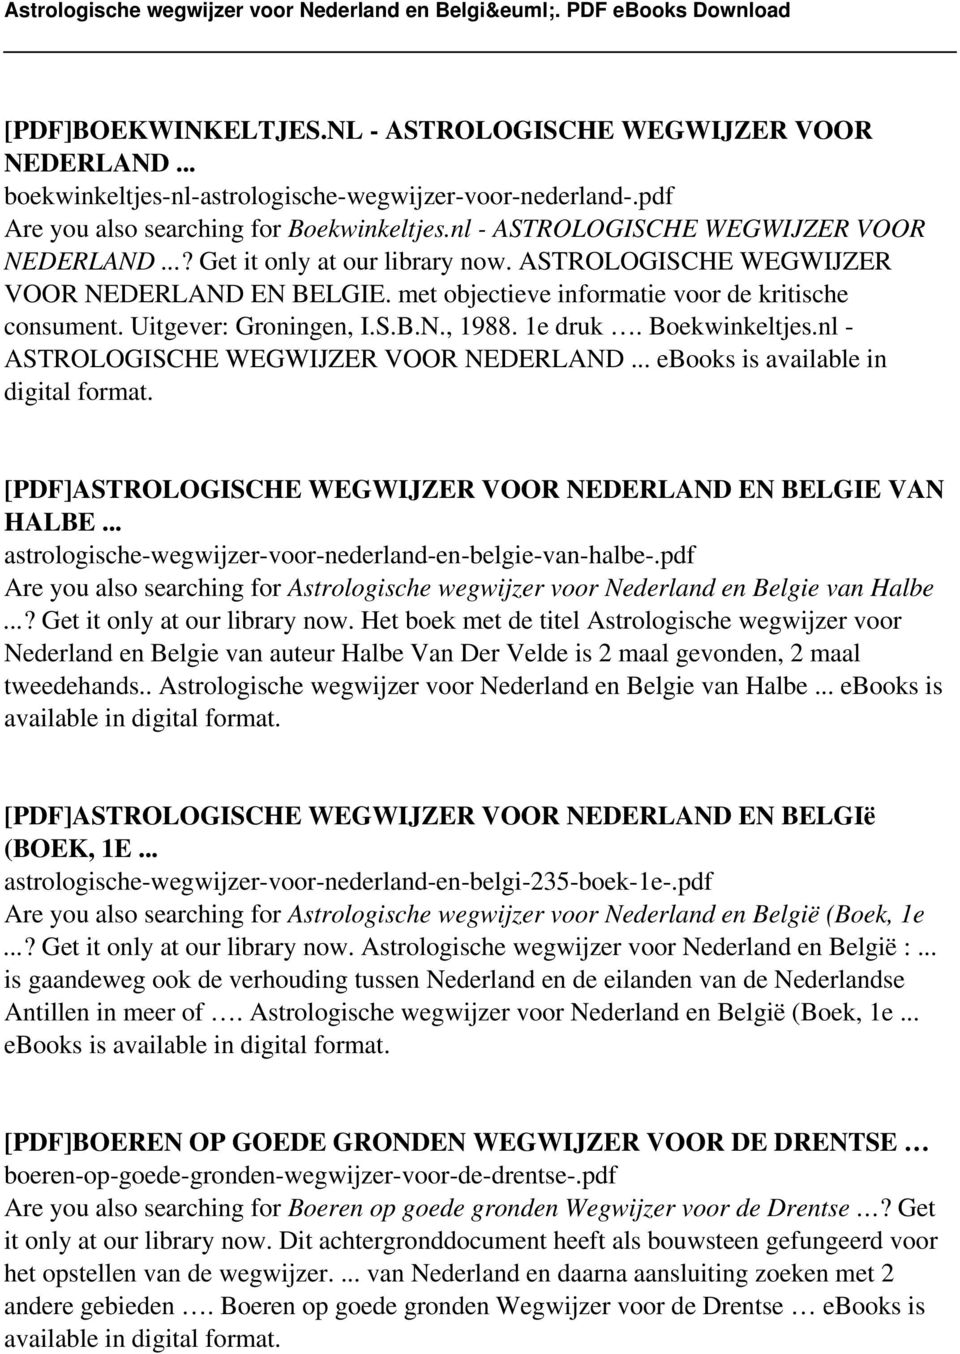 Uitgever: Groningen, I.S.B.N., 1988. 1e druk. Boekwinkeltjes.nl - ASTROLOGISCHE WEGWIJZER VOOR NEDERLAND... ebooks is available in digital format.